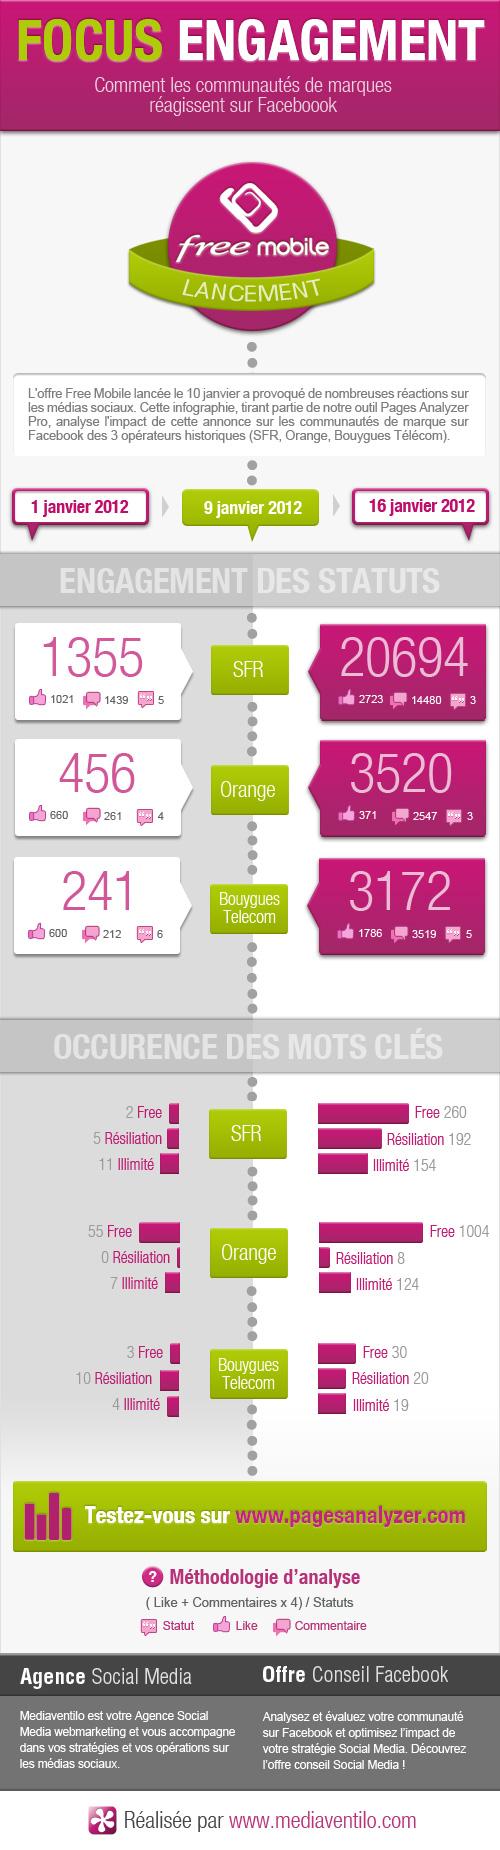 focus engagement lancement free mobile Free mobile : Infographie des communautés Facebook SFR, Orange et Bouygues Télécom